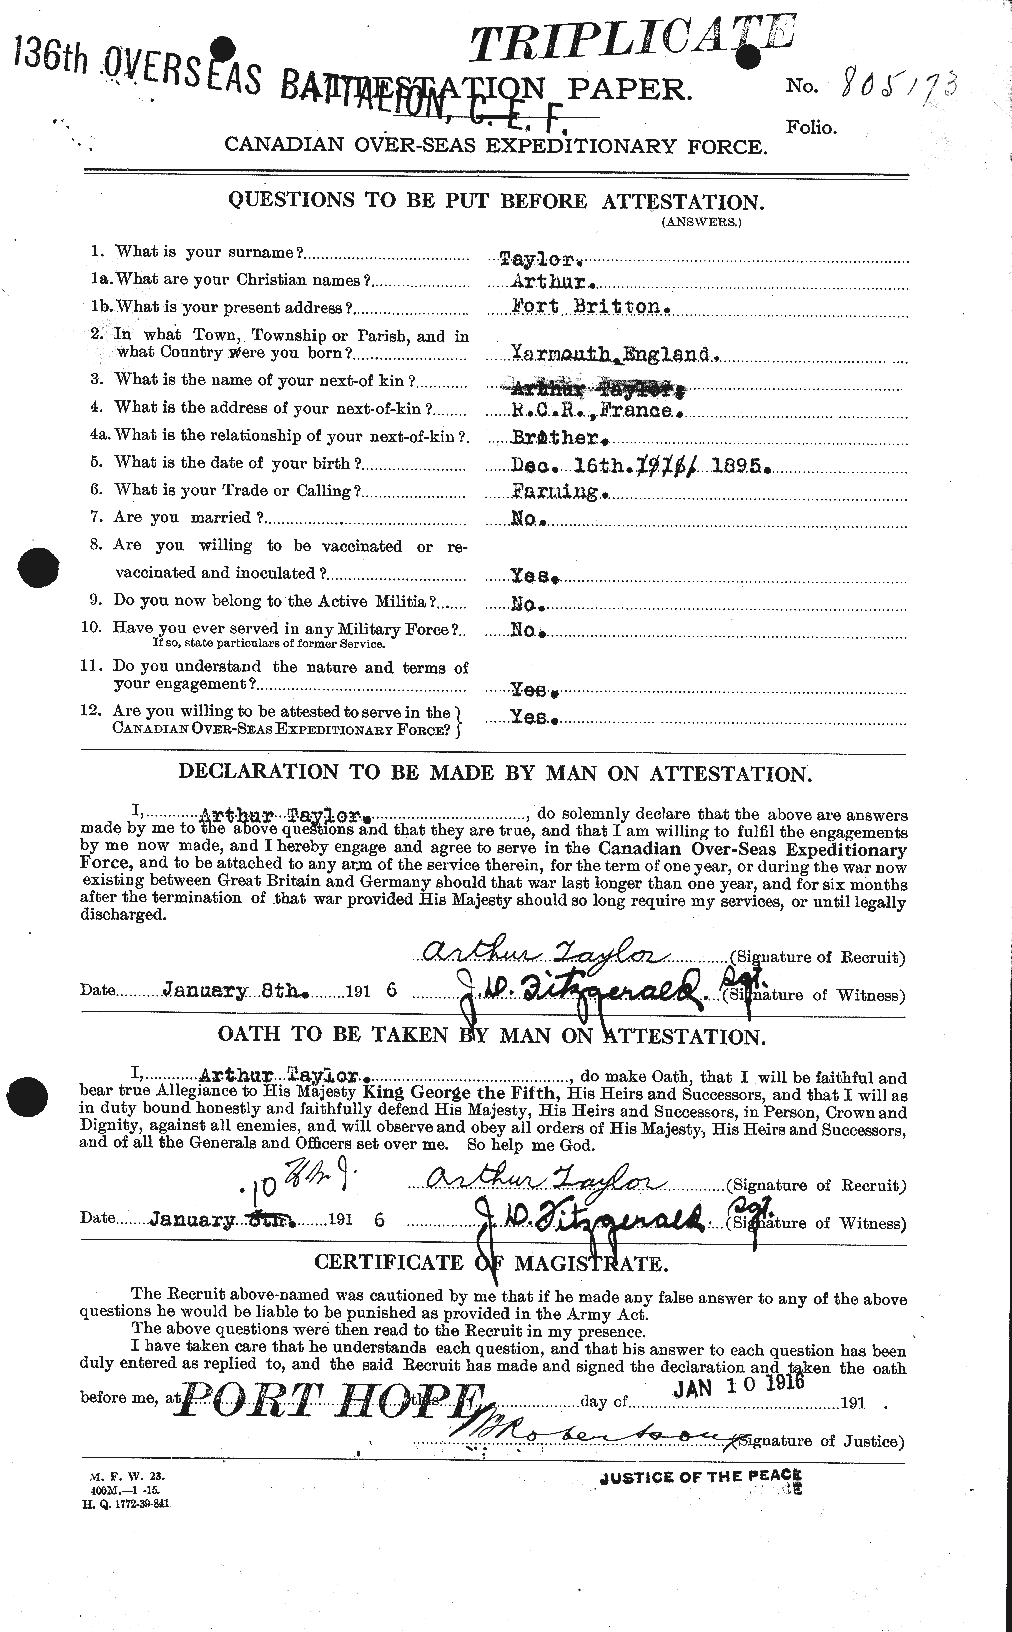 Dossiers du Personnel de la Première Guerre mondiale - CEC 626708a